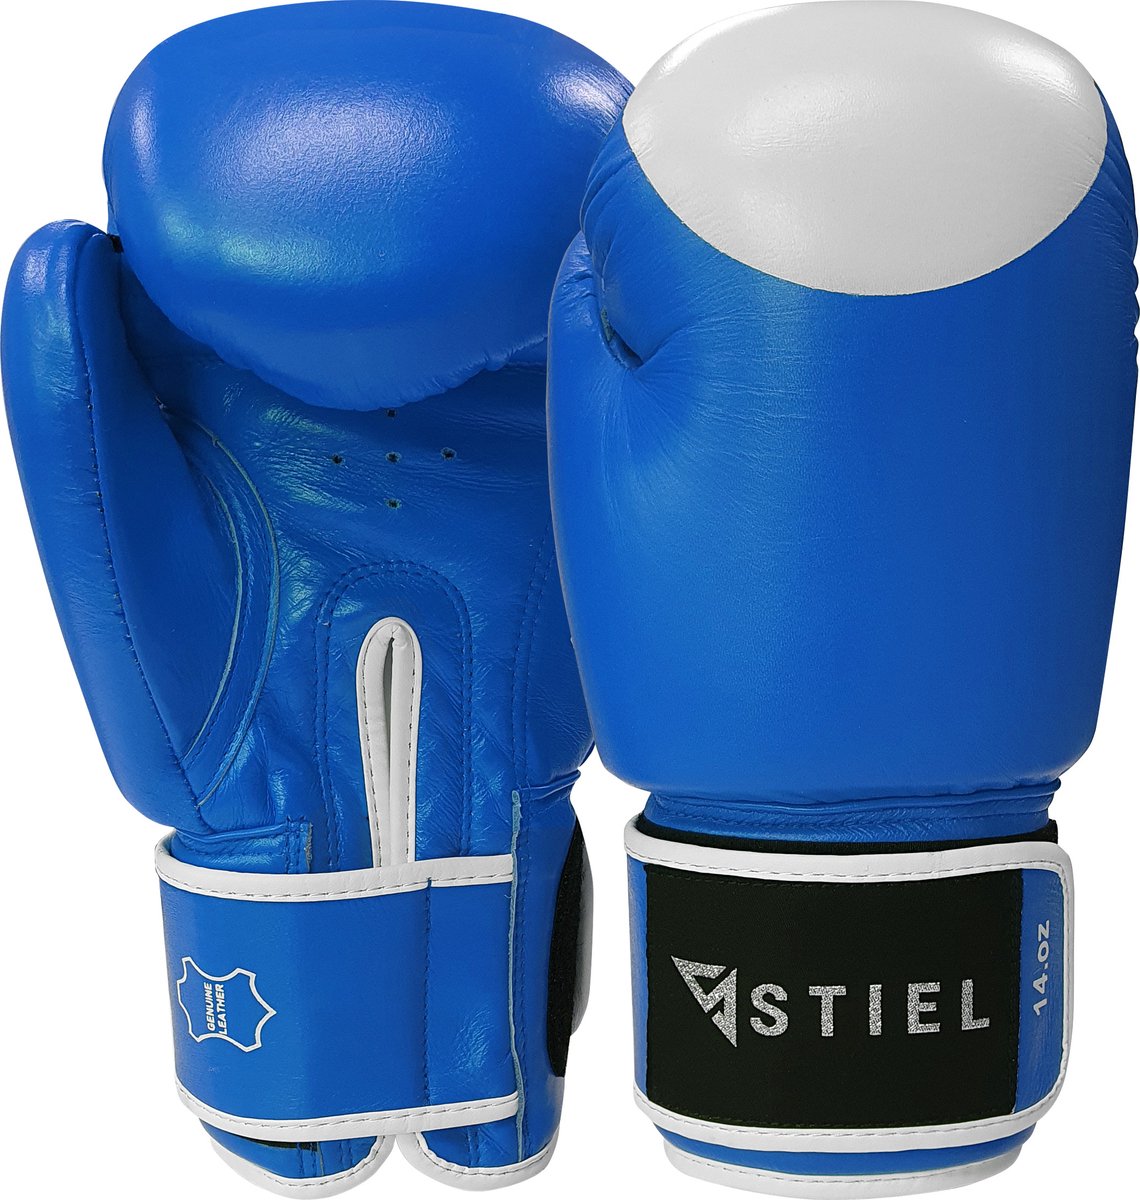 Stiel Pro Boxing Bokshandschoenen - met target - Blauw - 16 oz.